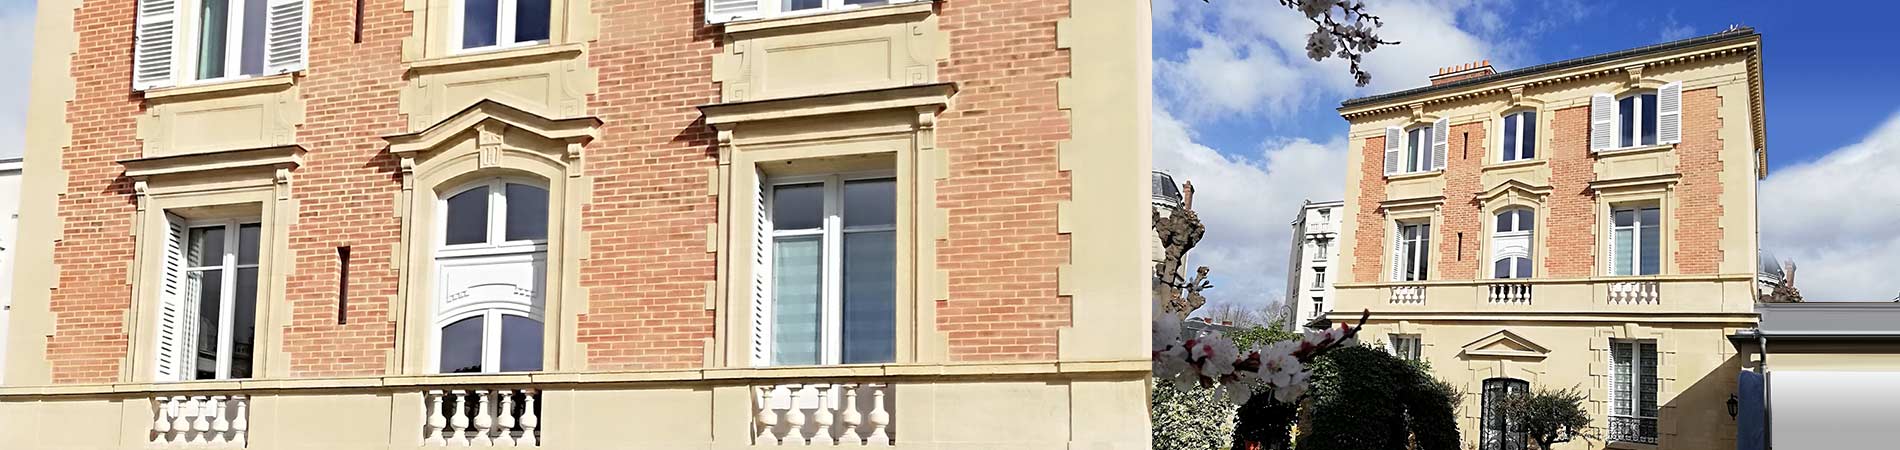 Restauration d’une Villa à Saint Germain en Laye